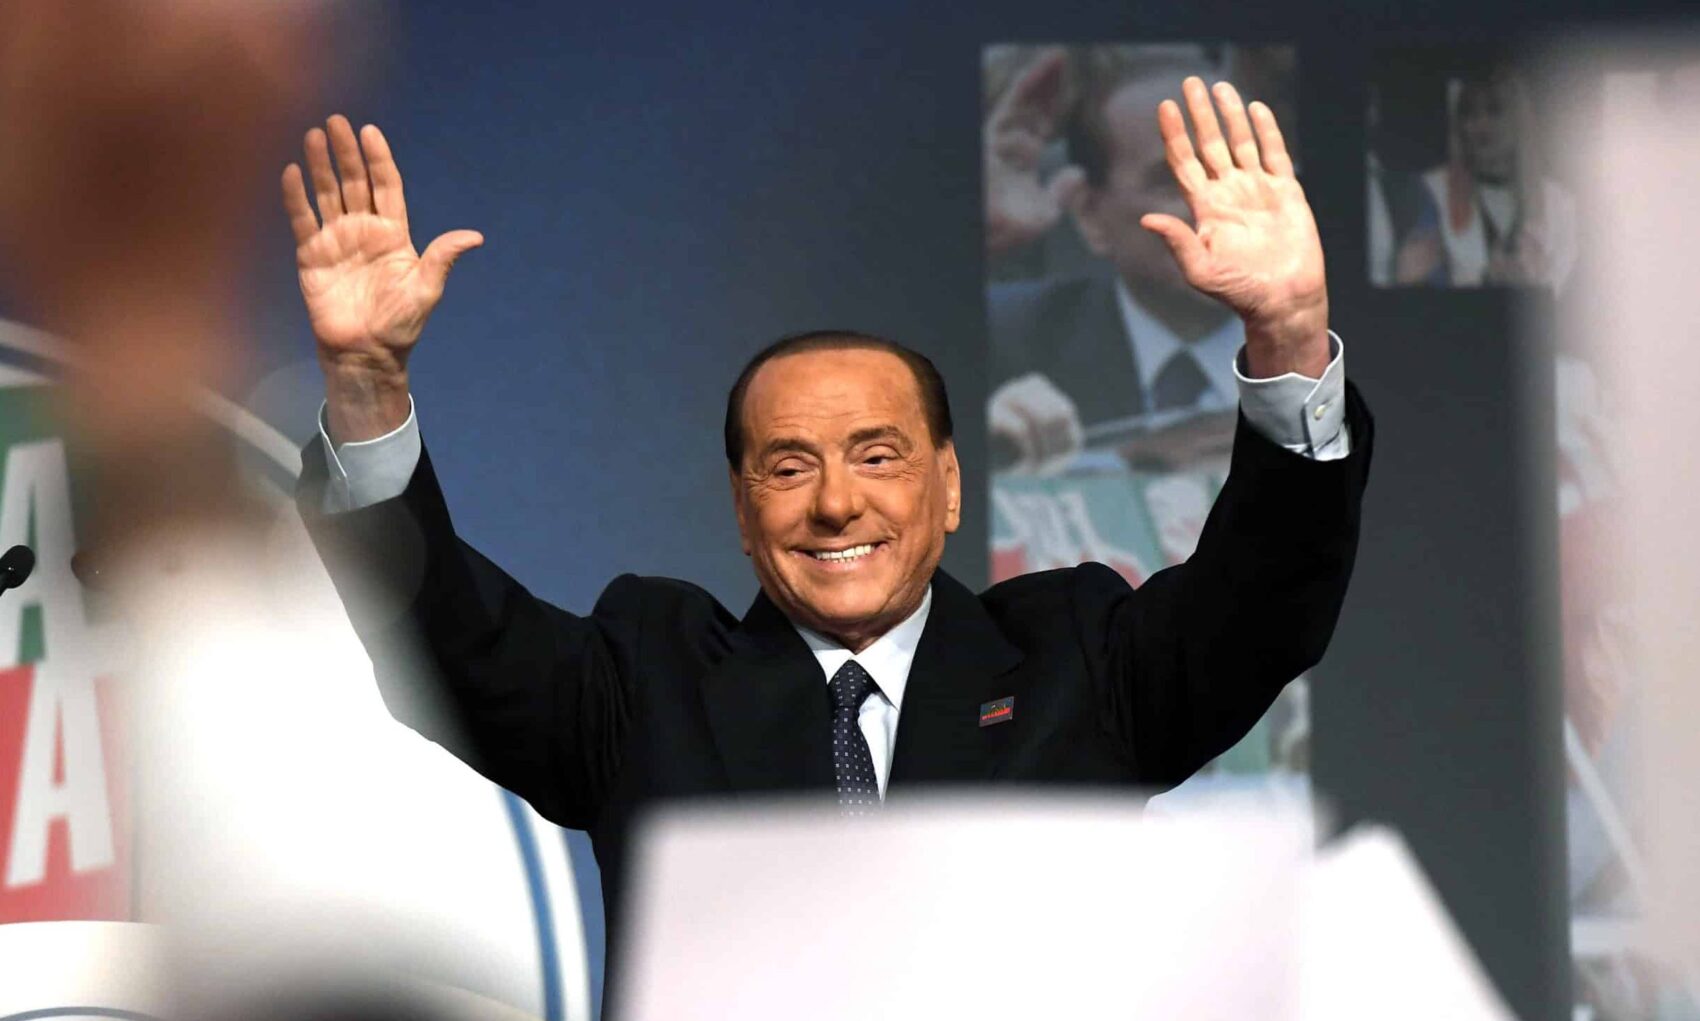 Lutto nazionale per Berlusconi, negli ultimi trent’anni non era stato concesso a nessun ex premier